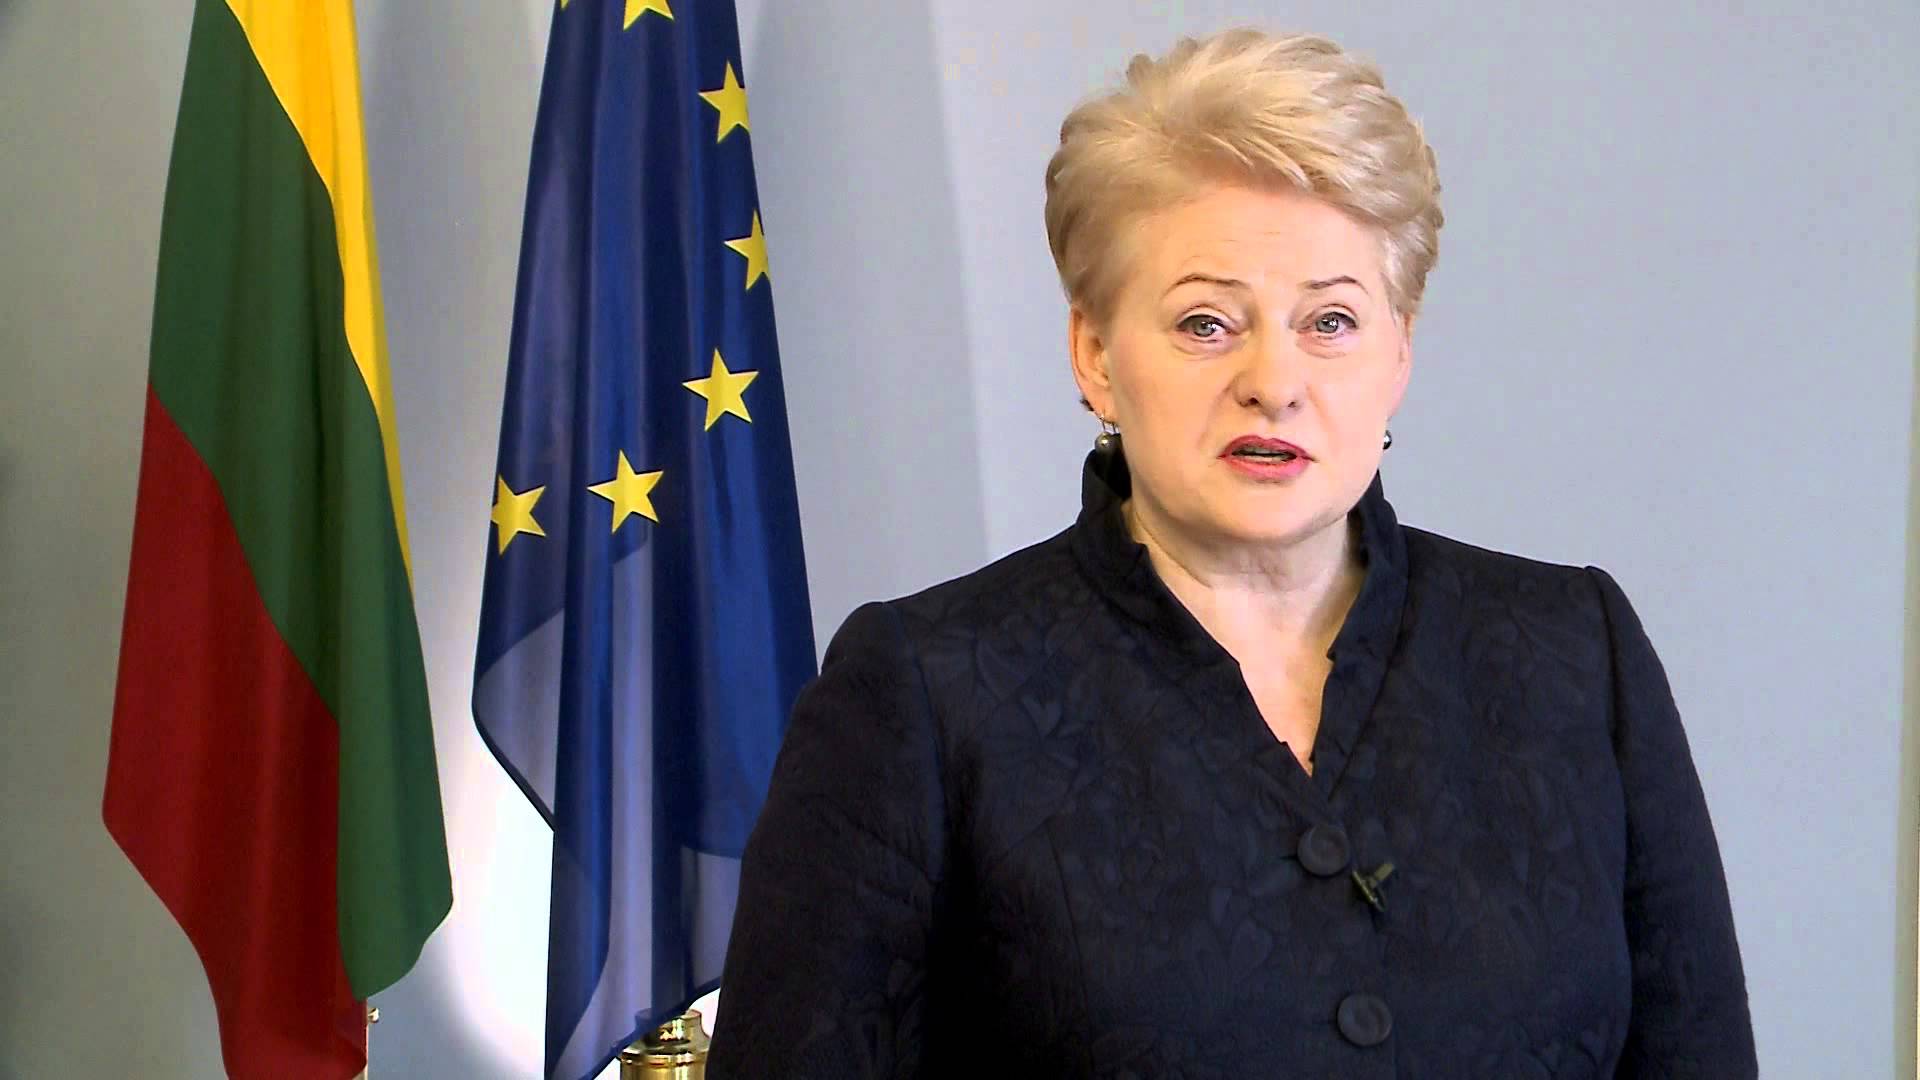 Atsisveikinimas su D.Grybauskaite: prezidentei už darbą bus padėkota kultūriniu renginiu